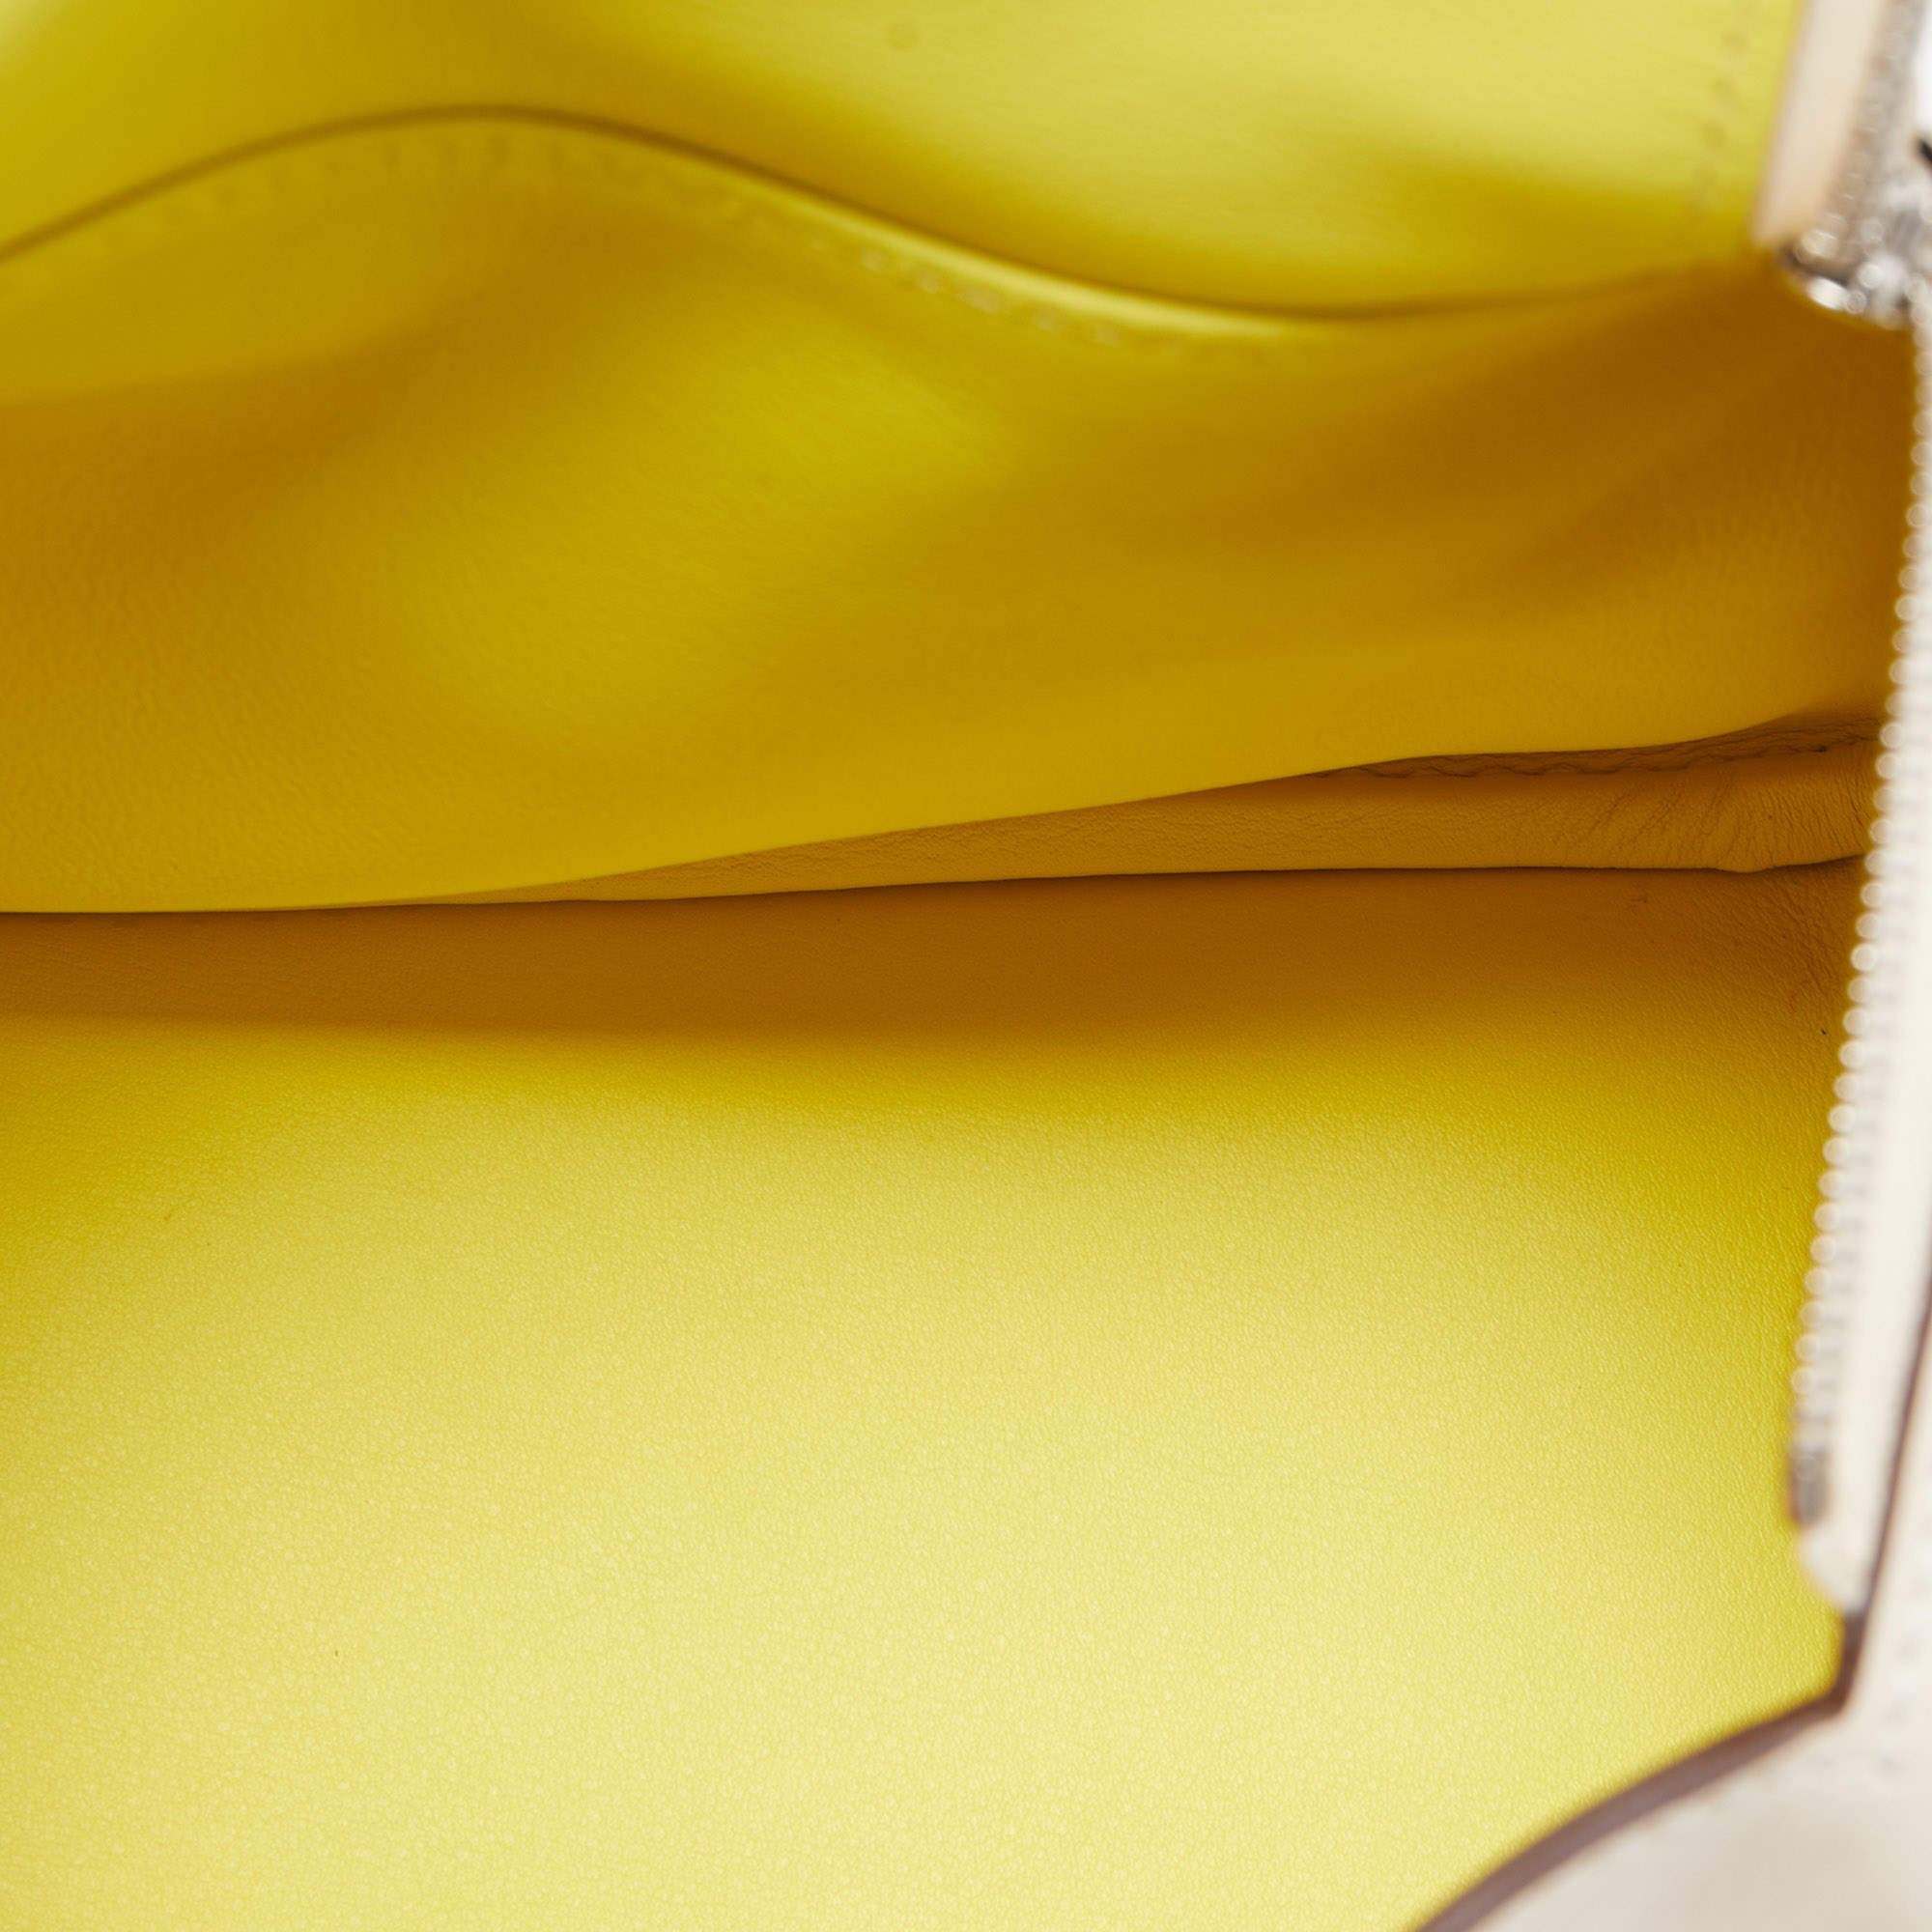 Hermes mini bag with Louis Vuitton shirt🪐 What's app for assistance +44  7946 132691📲 📸 @lenaterlutter #personalshopperlondon…